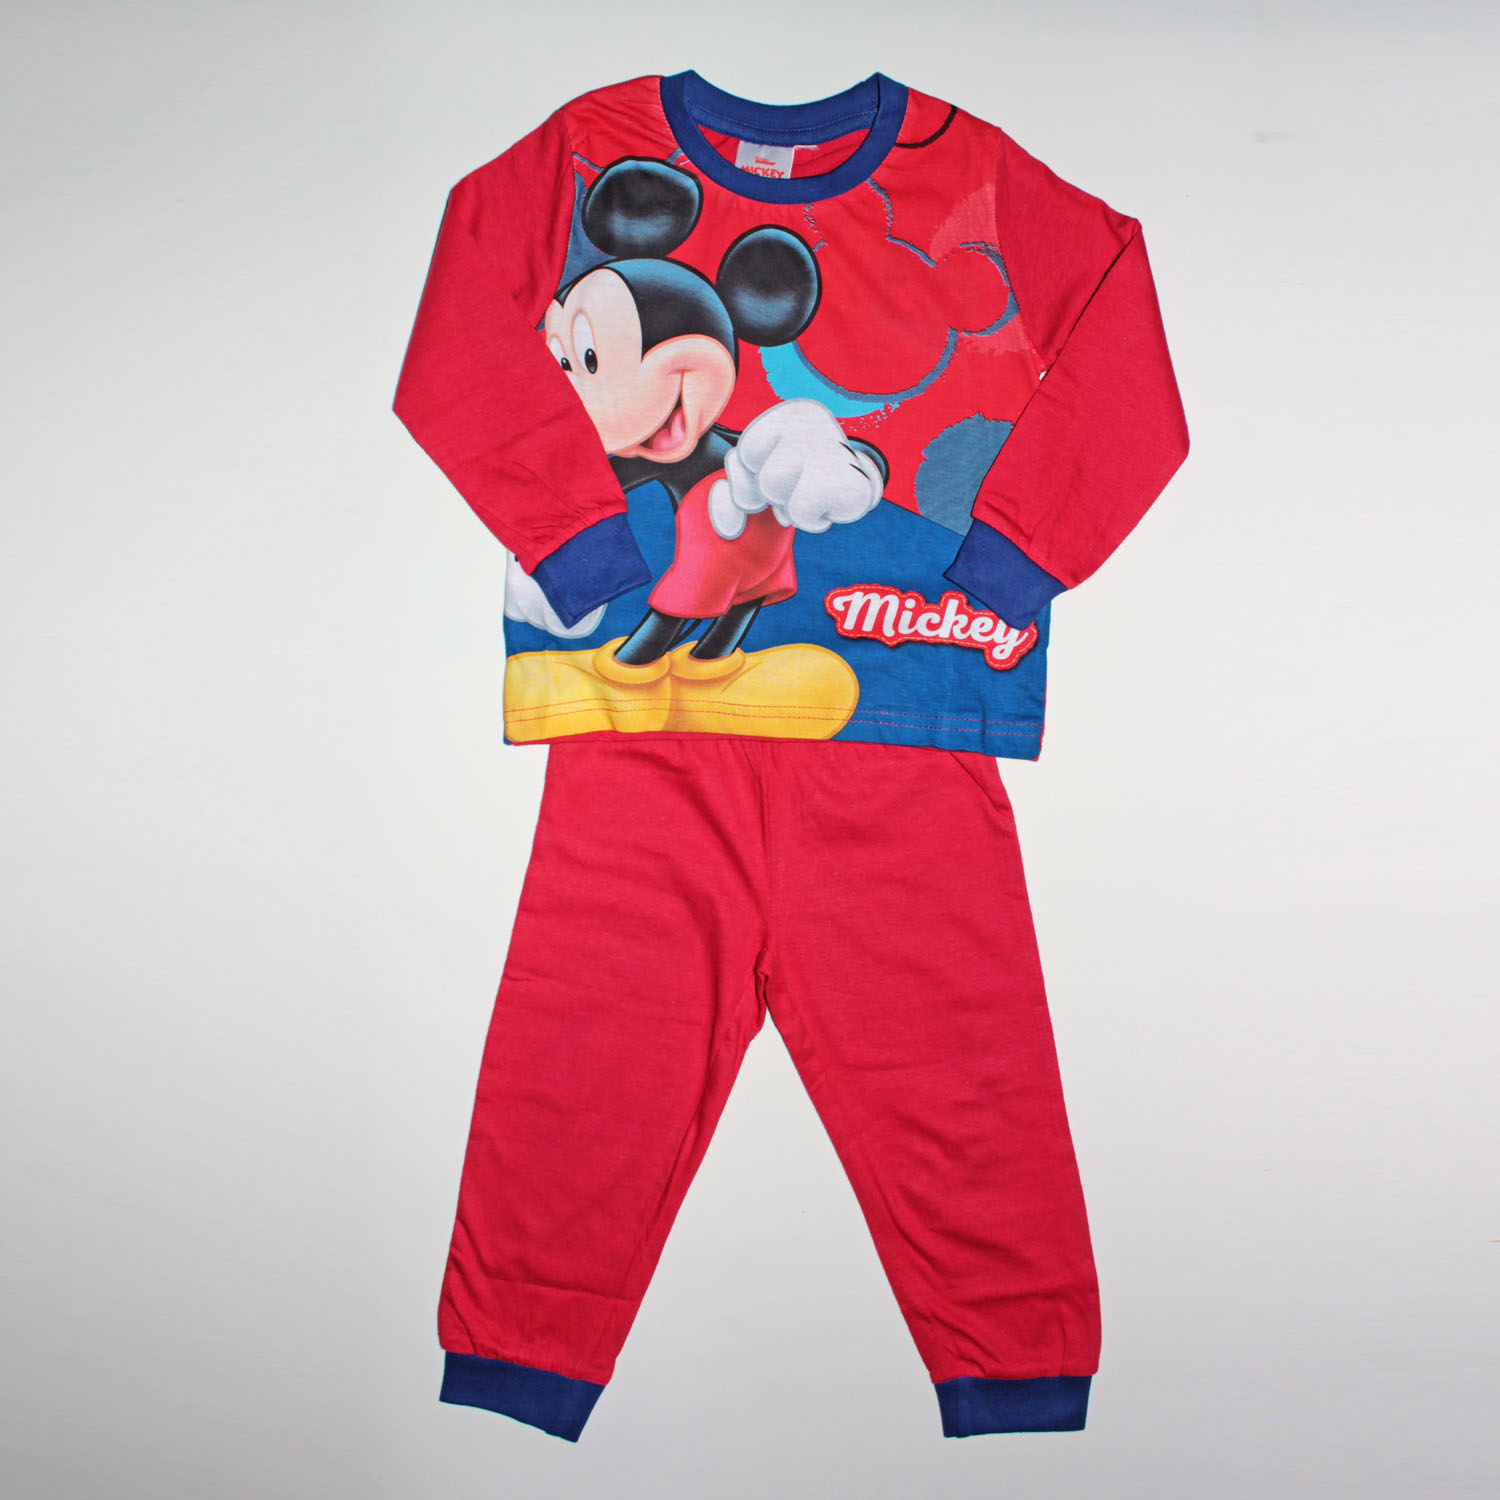 Disney Pijama Niño M/l 54238-0 Rojo Mickey T.6 Años - la Media de Seda